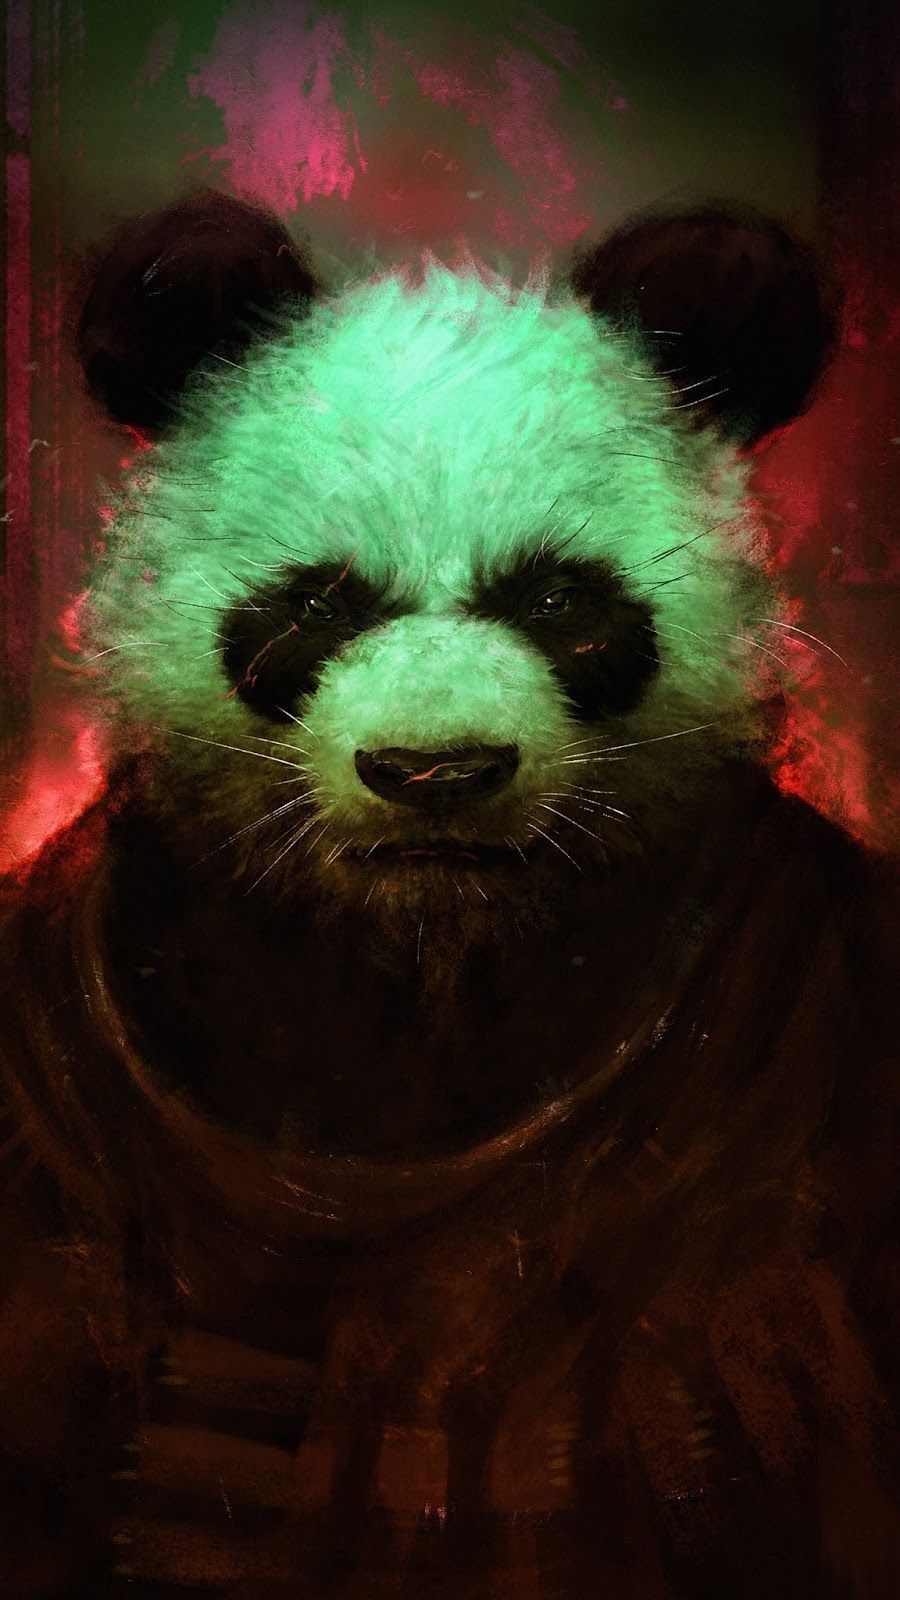 Bad Panda Wallpaper. Panda wallpaper, Panda art, Cute panda wallpaper